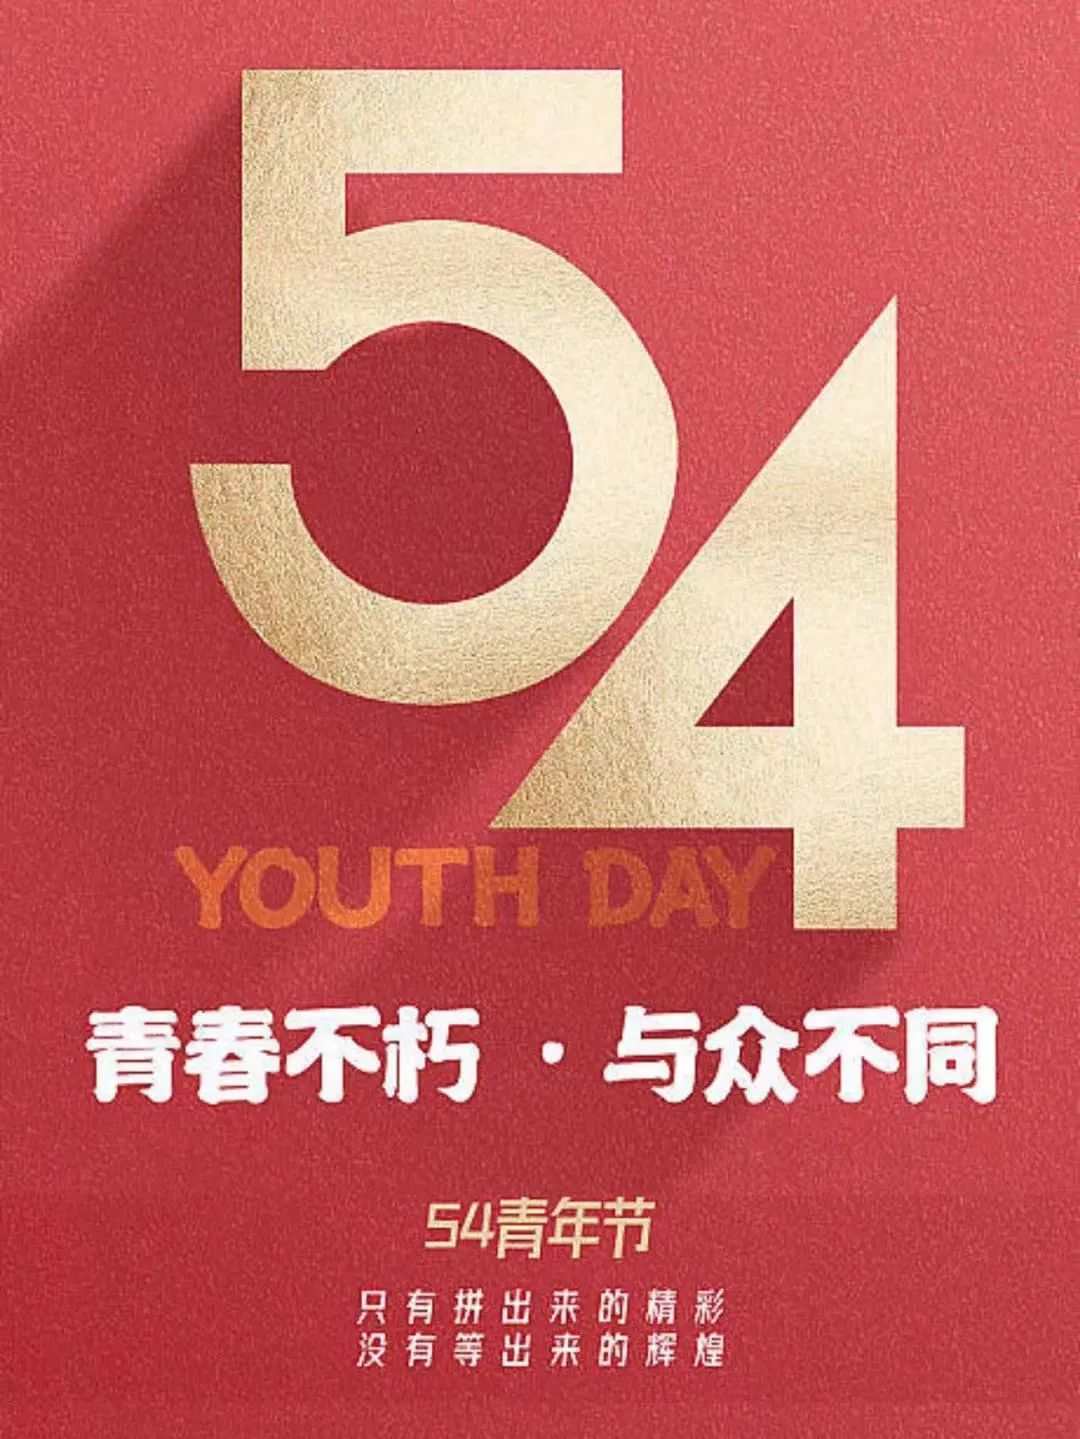 平博致敬青春力量，五四青年节快乐！